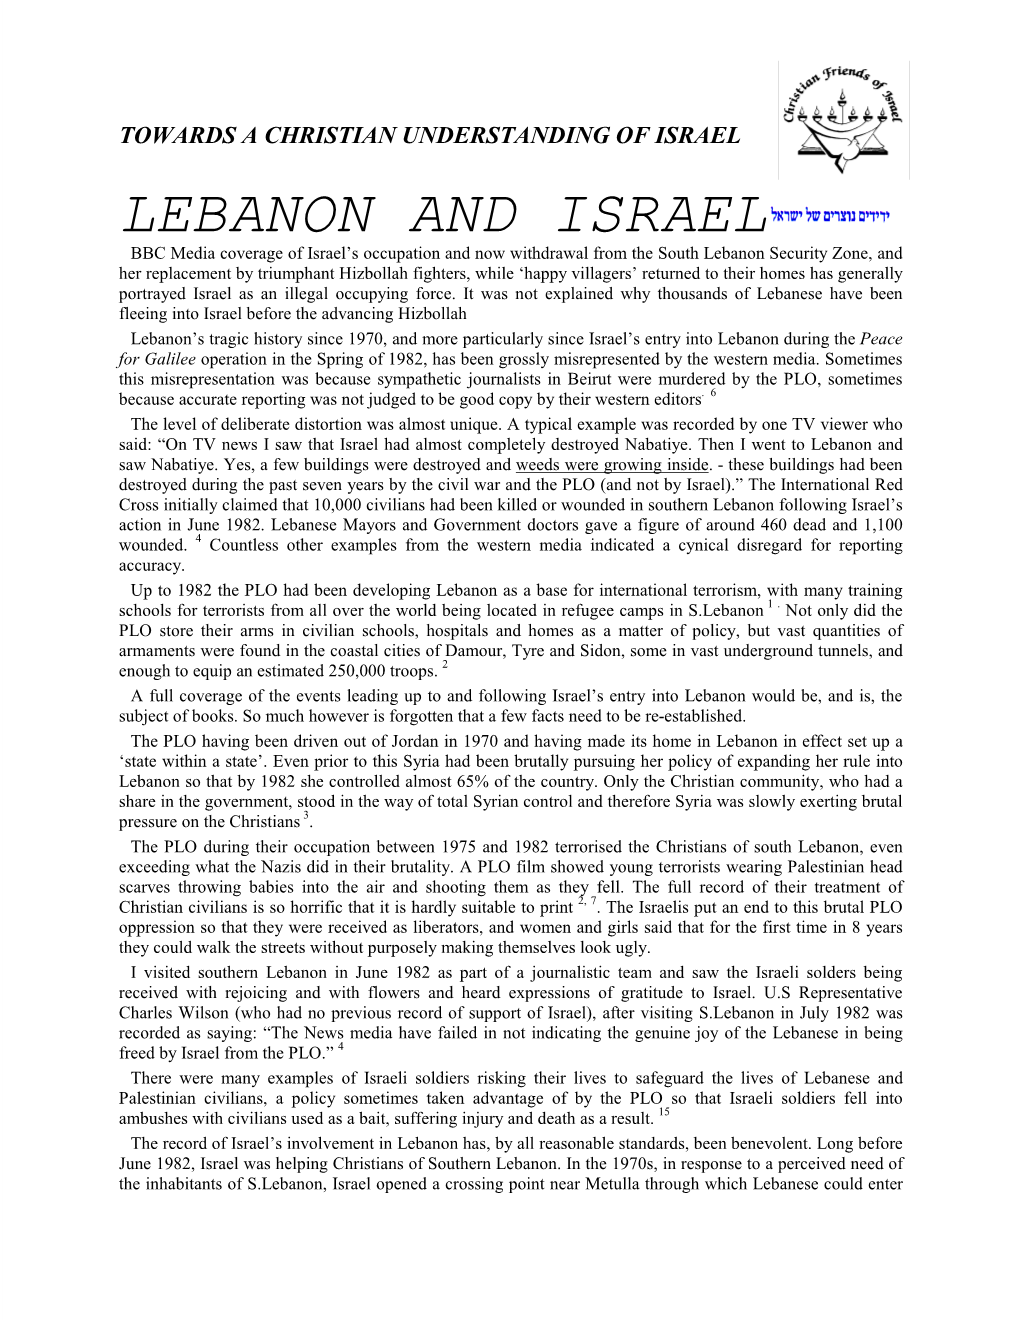 Lebanon and Israel